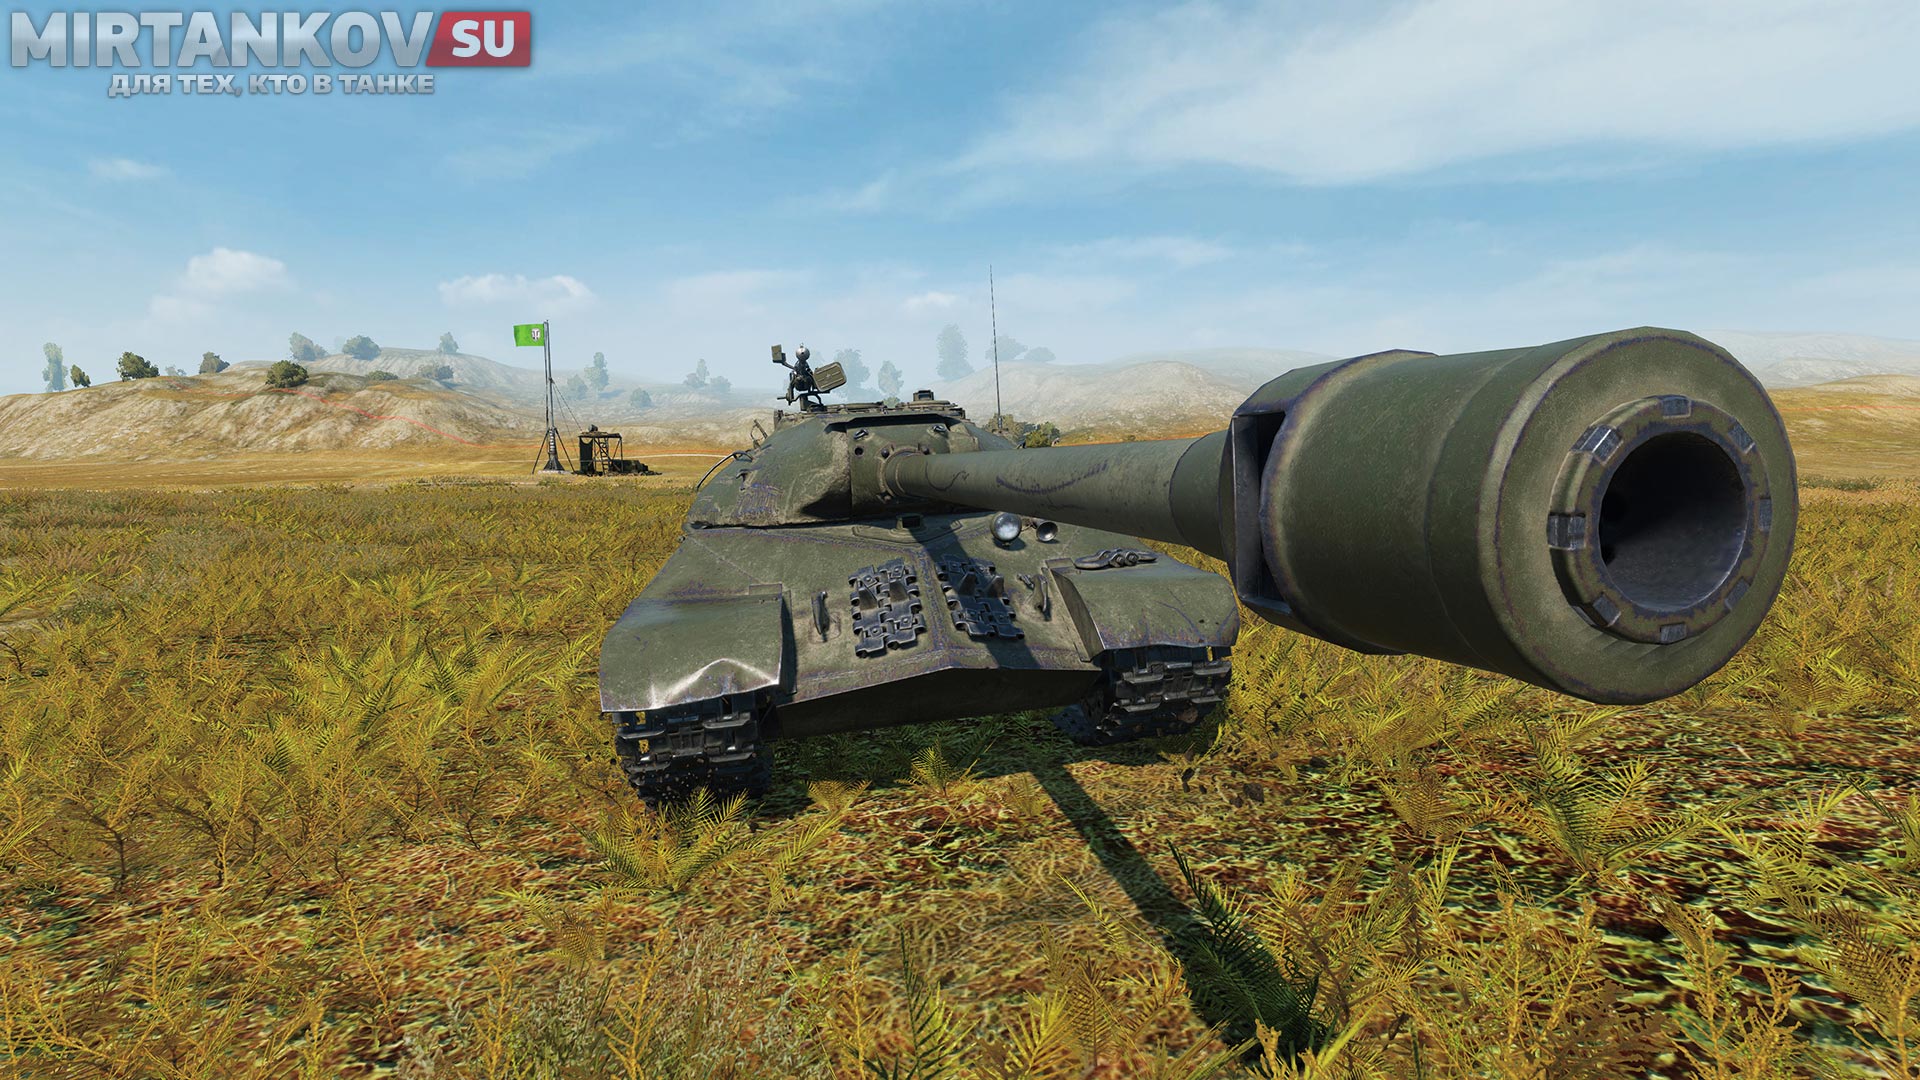 ис-3 в обновлении world of tanks 0.9.8 получил hd модель